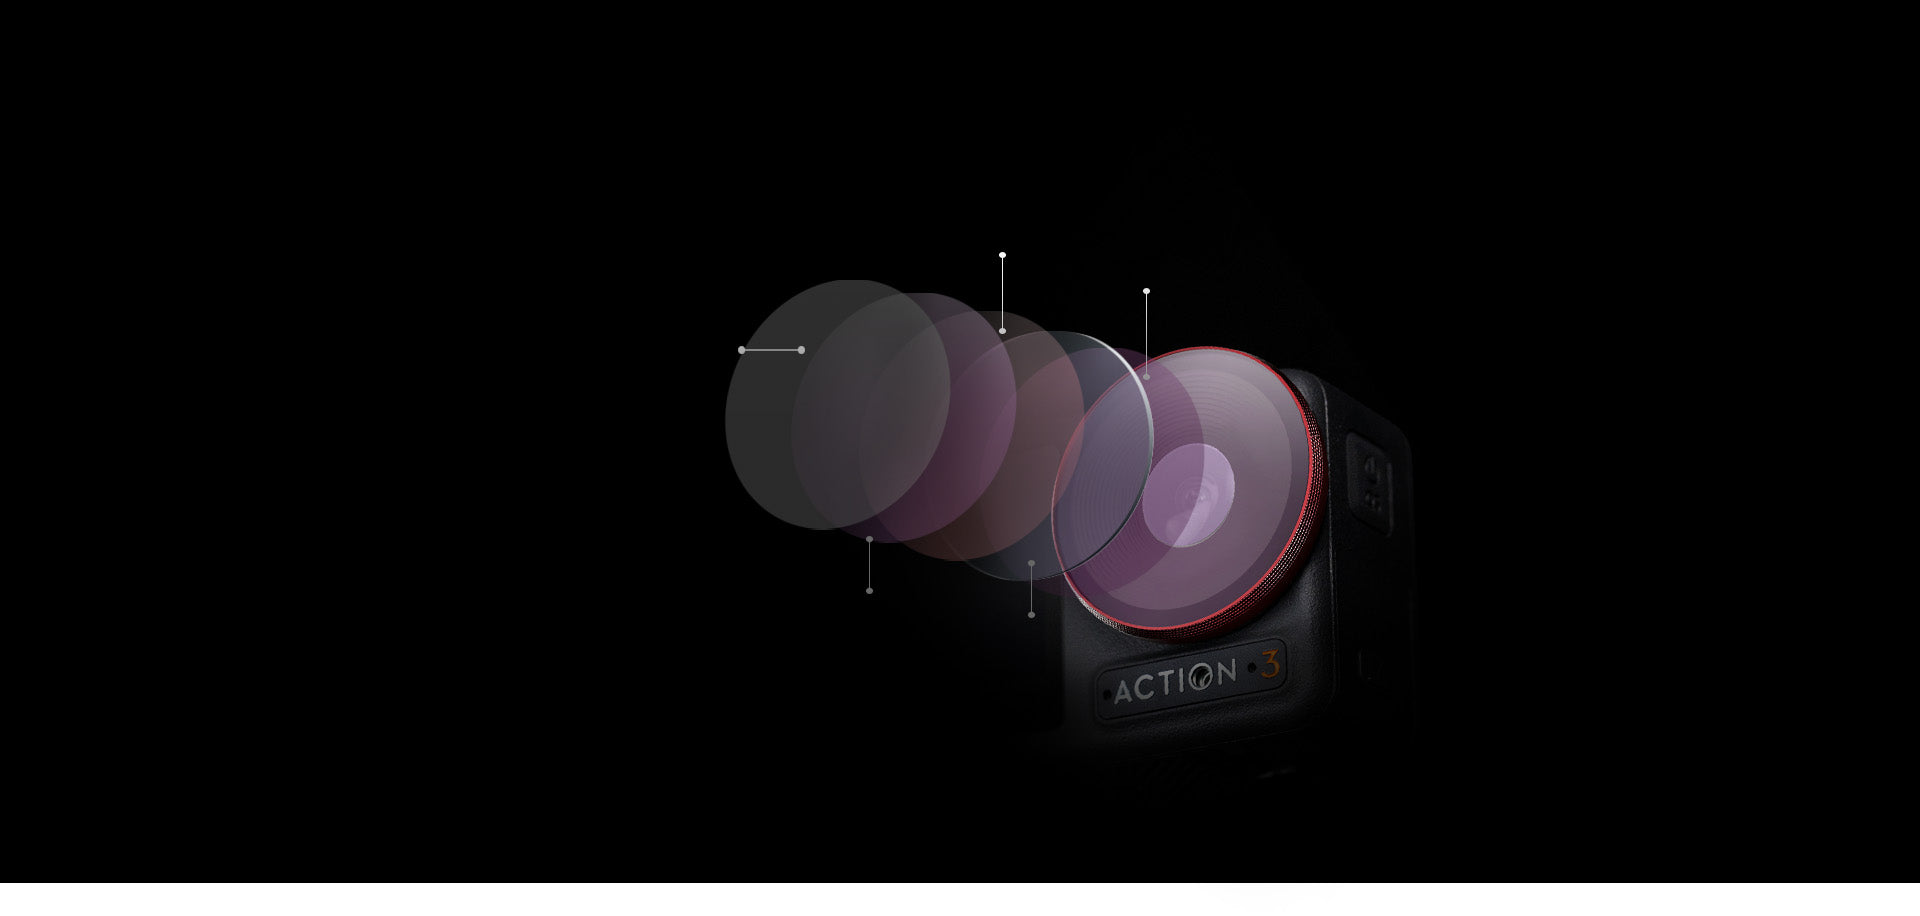 DJI Mini 3 Pro reduziert die Reflexion ohne Farbverschiebungen